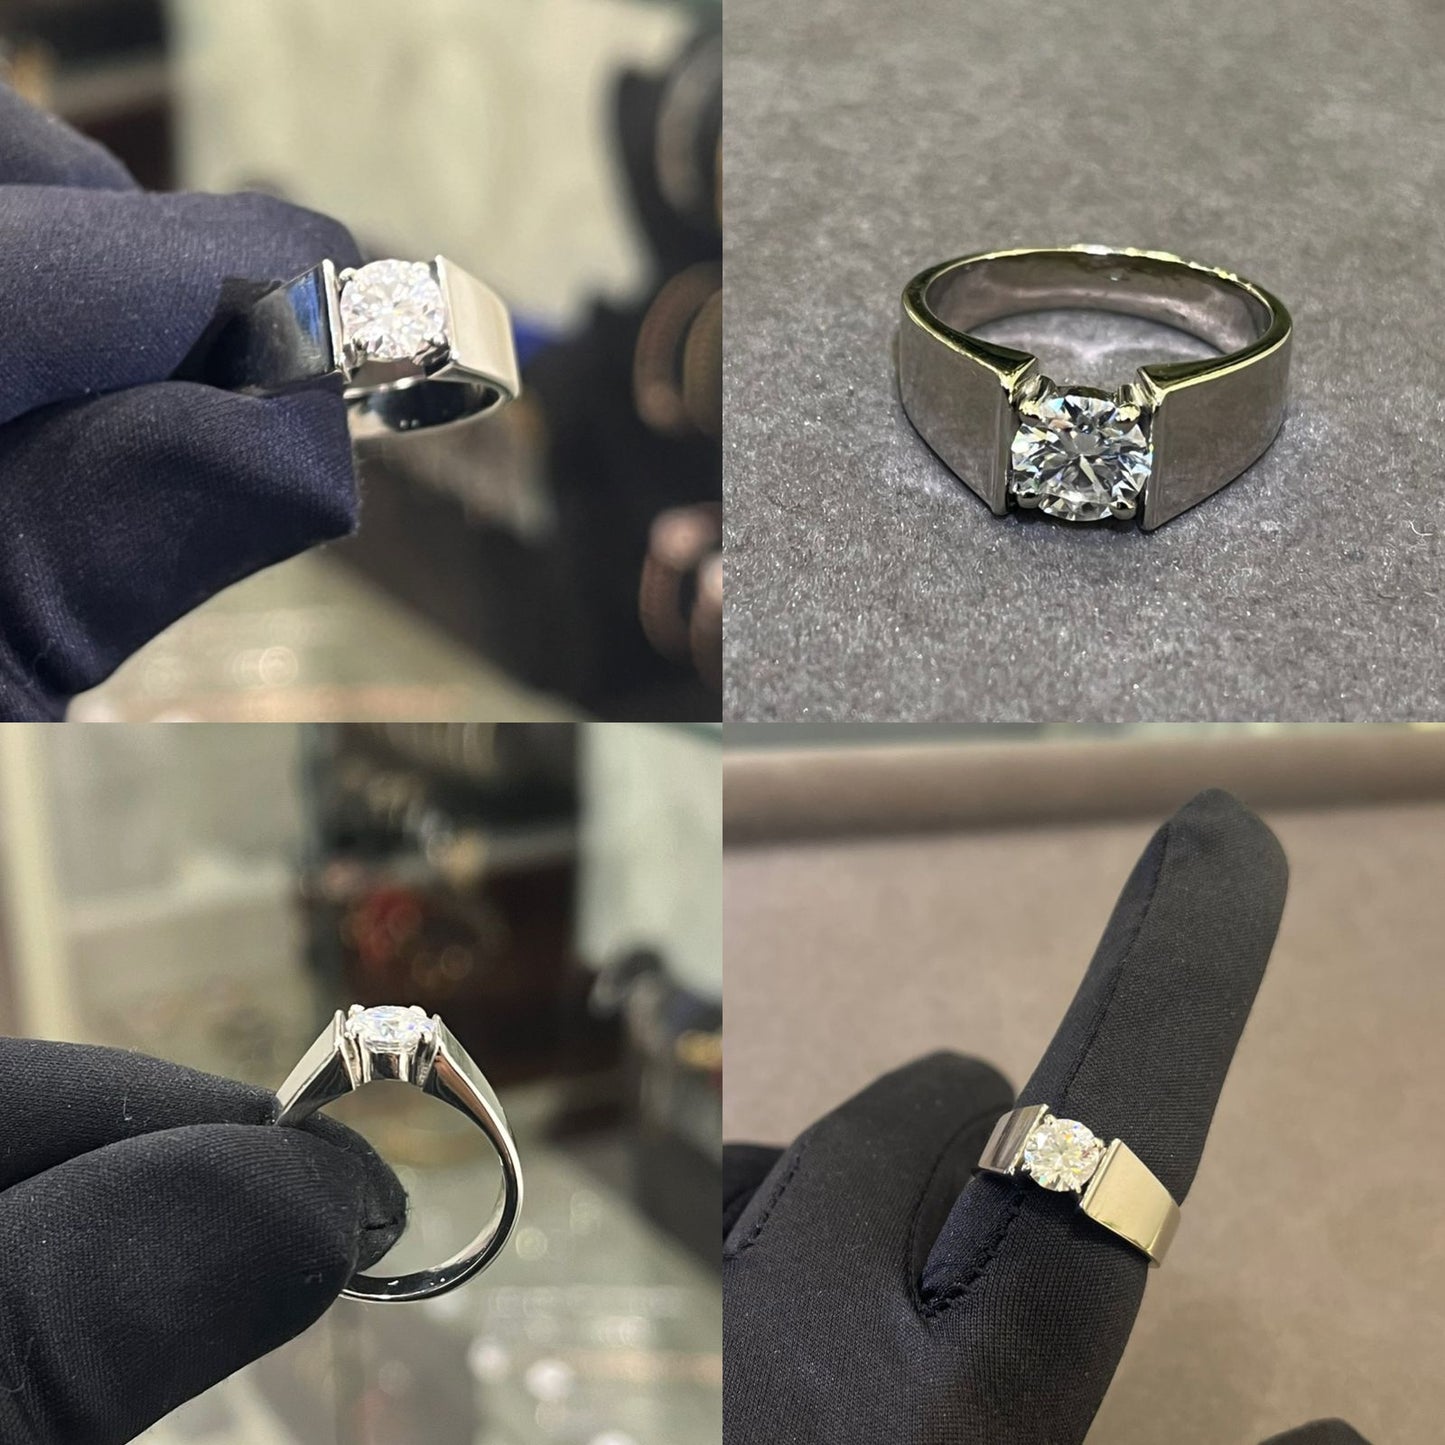 1 Carat Solitaire Ring for Men - 18Kt White Hallmarked Gold & Certified GRA Moissanite Diamond